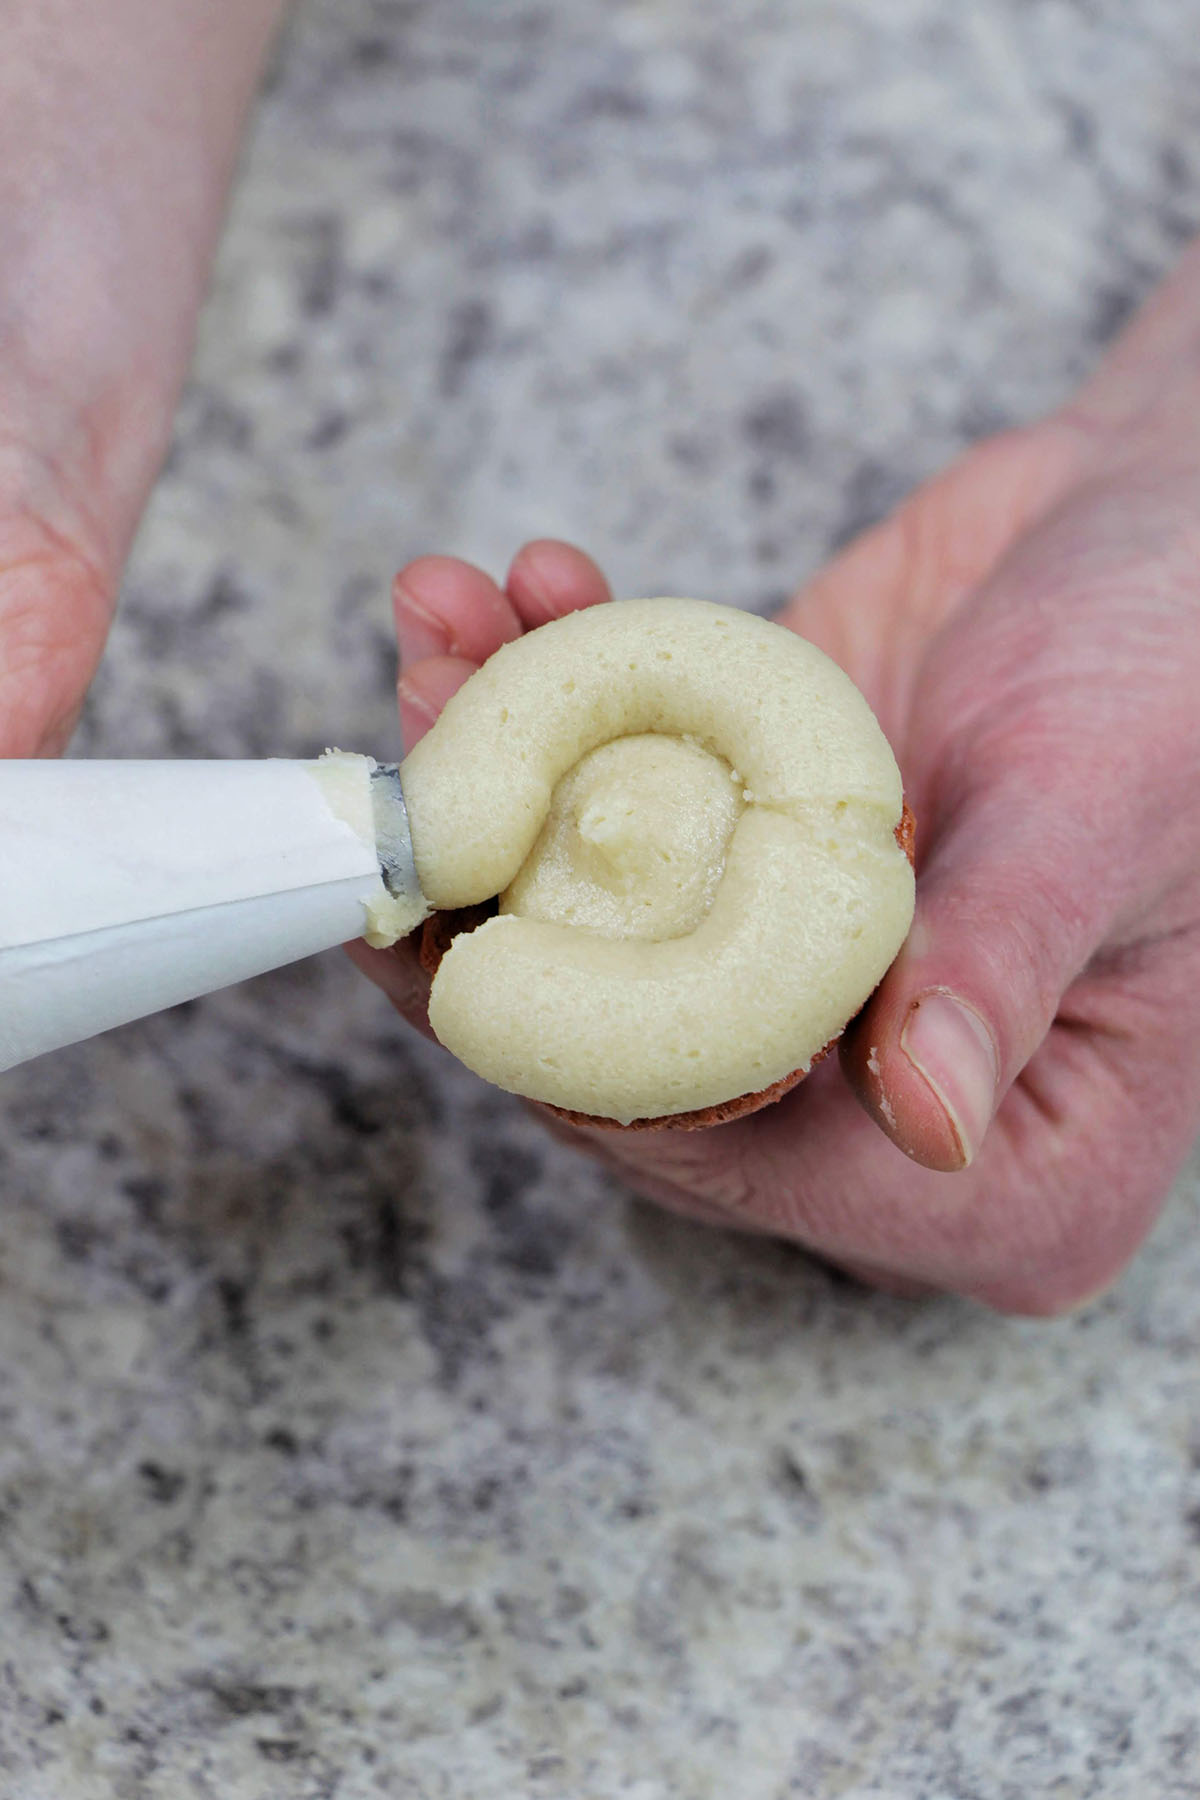 piping cookie dough buttercream onto a brown macaron.